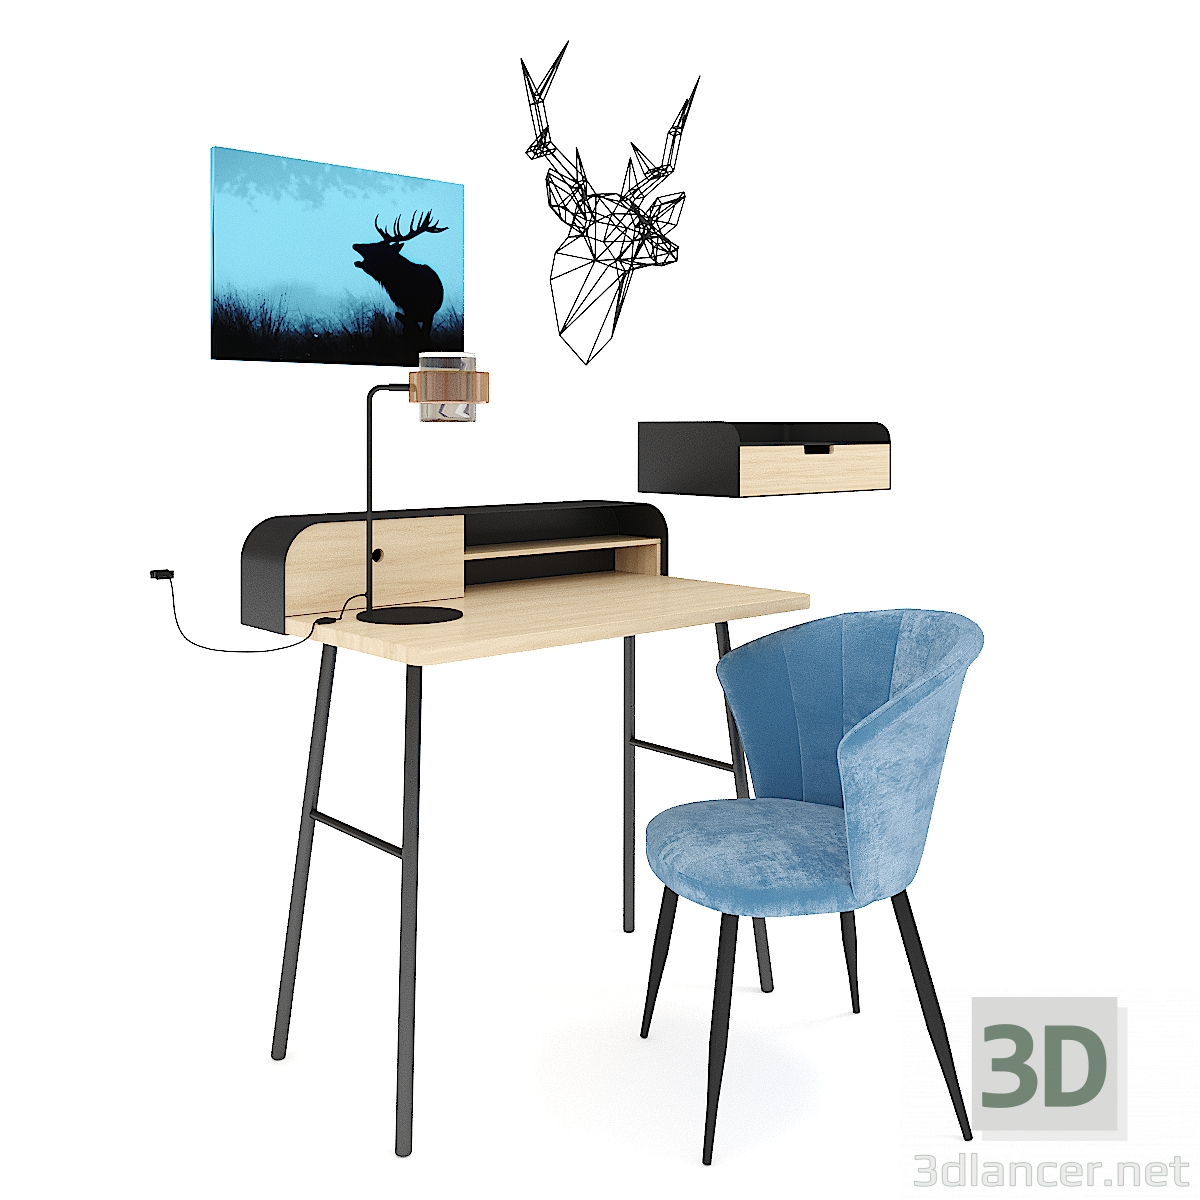 3d Workplace LA REDOUTE model buy - render